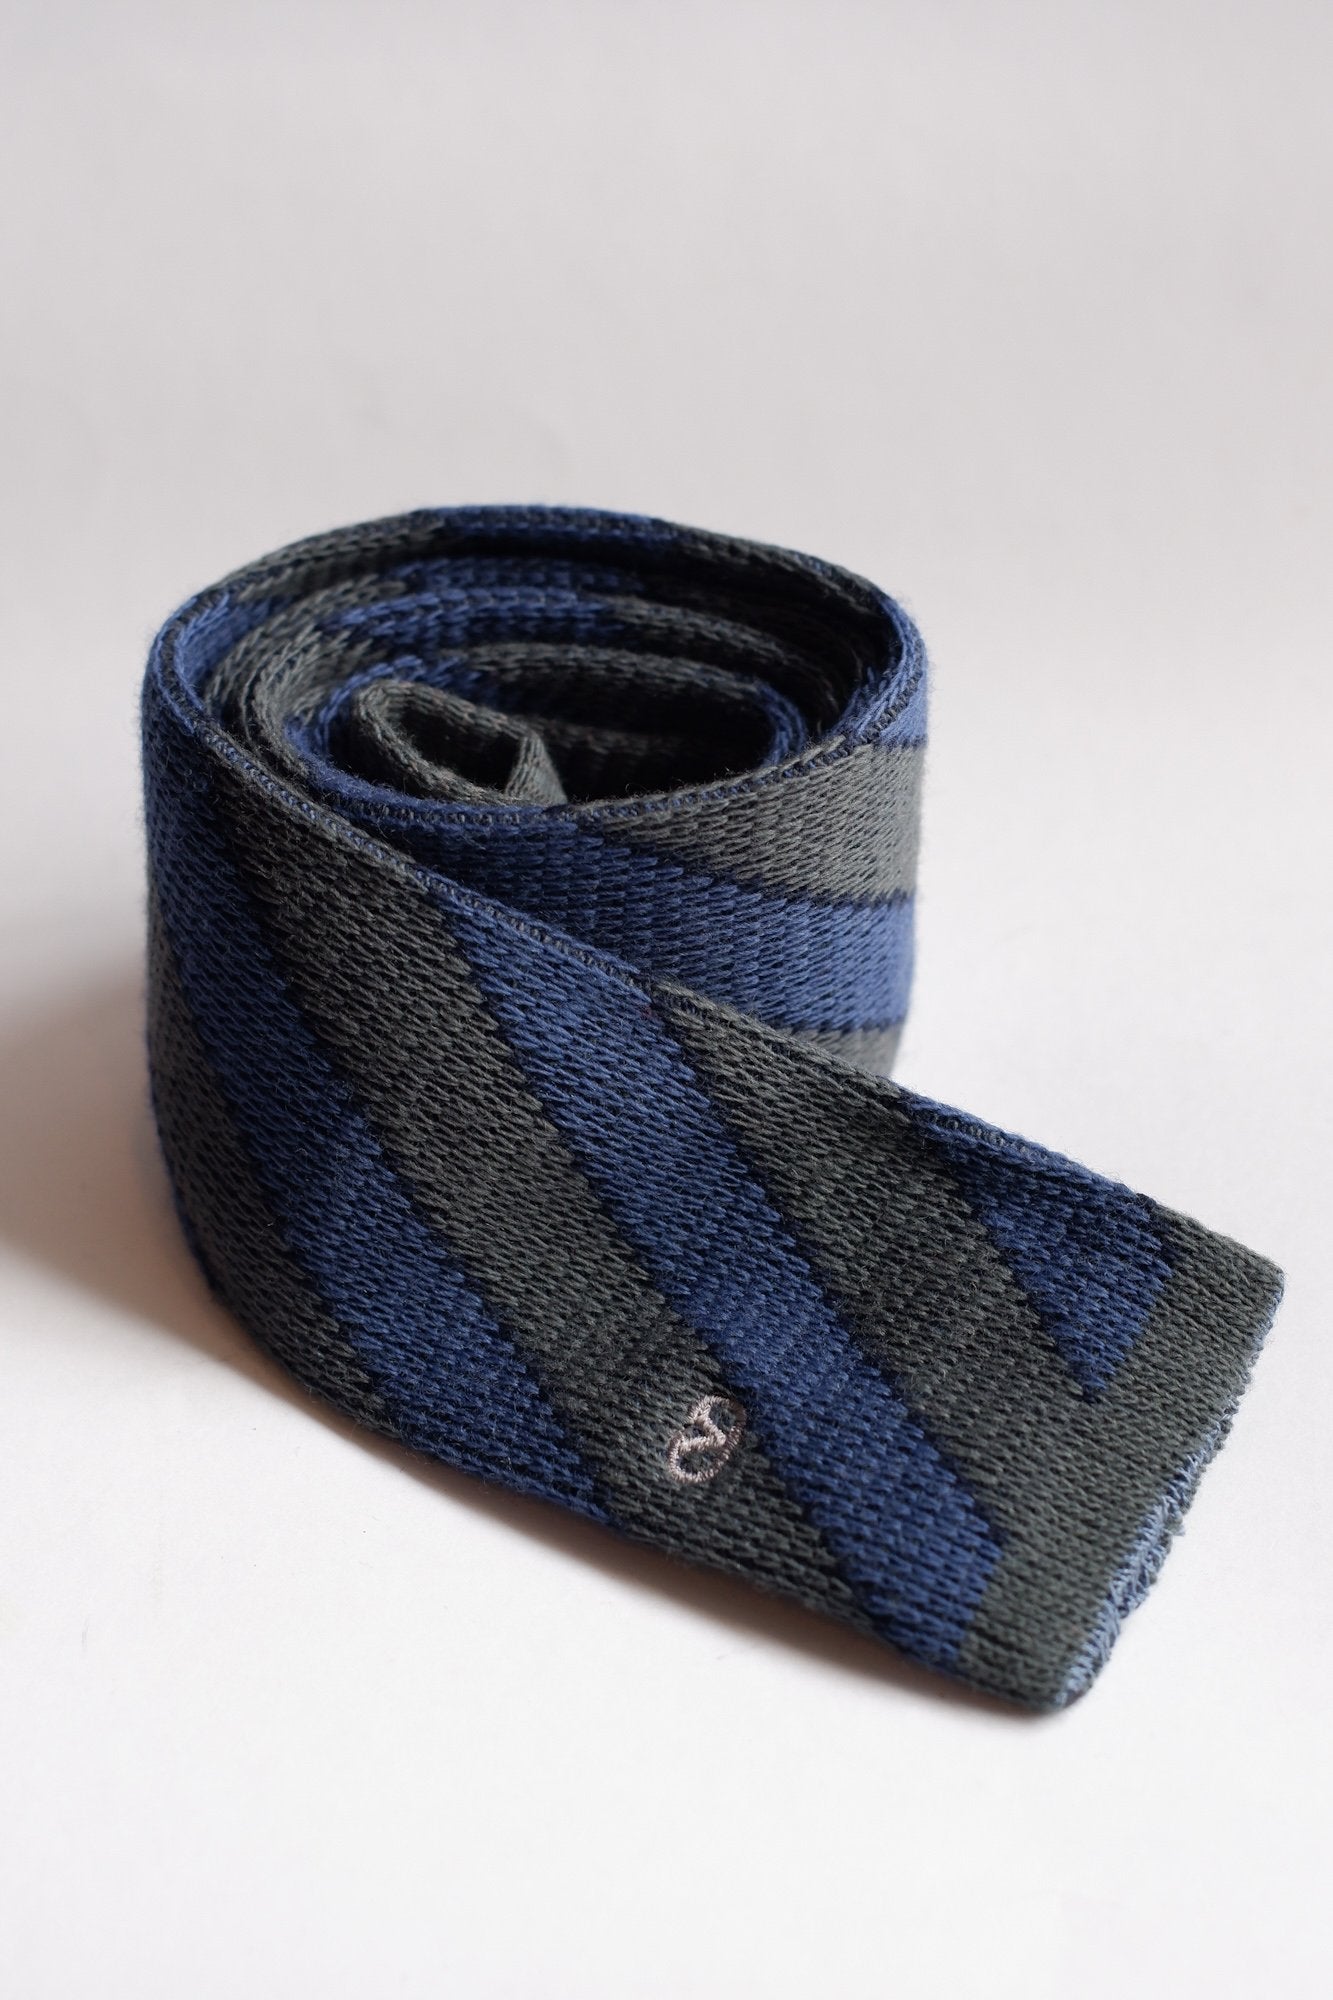 Valentino Grey and Blue Stripe Knitted Necktie